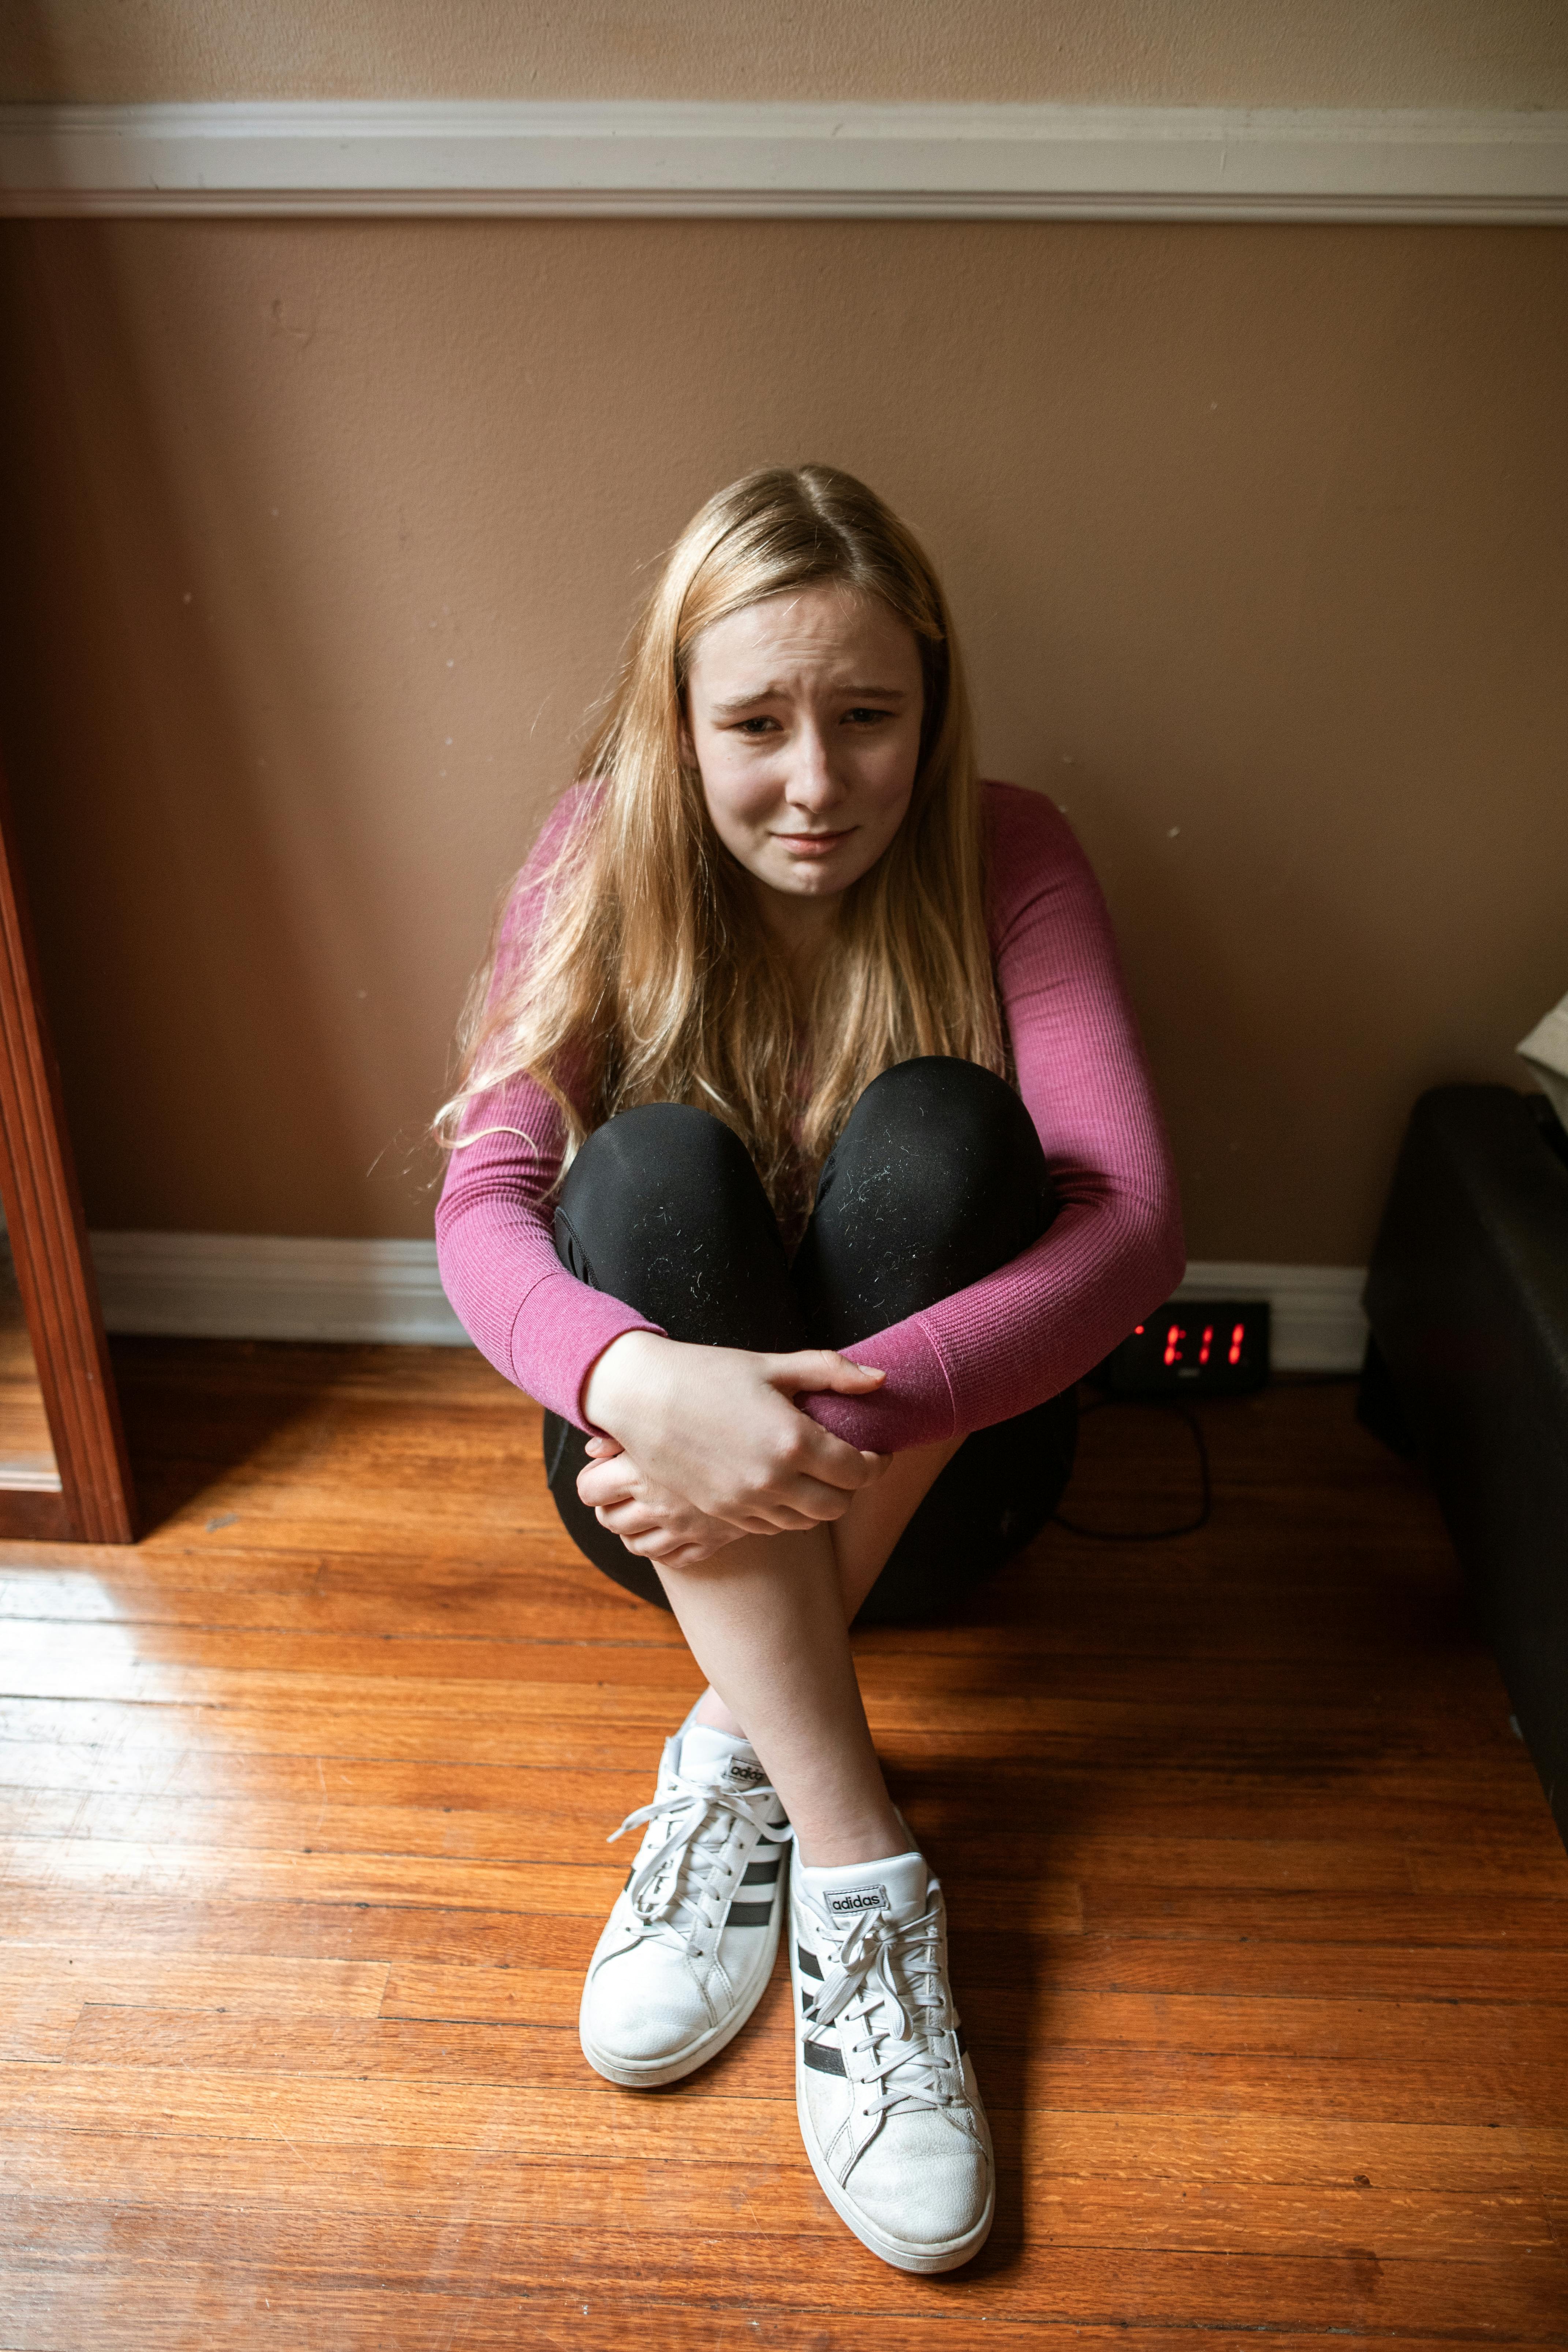 Ein junges Mädchen, das auf dem Boden sitzt und weint | Quelle: Pexels